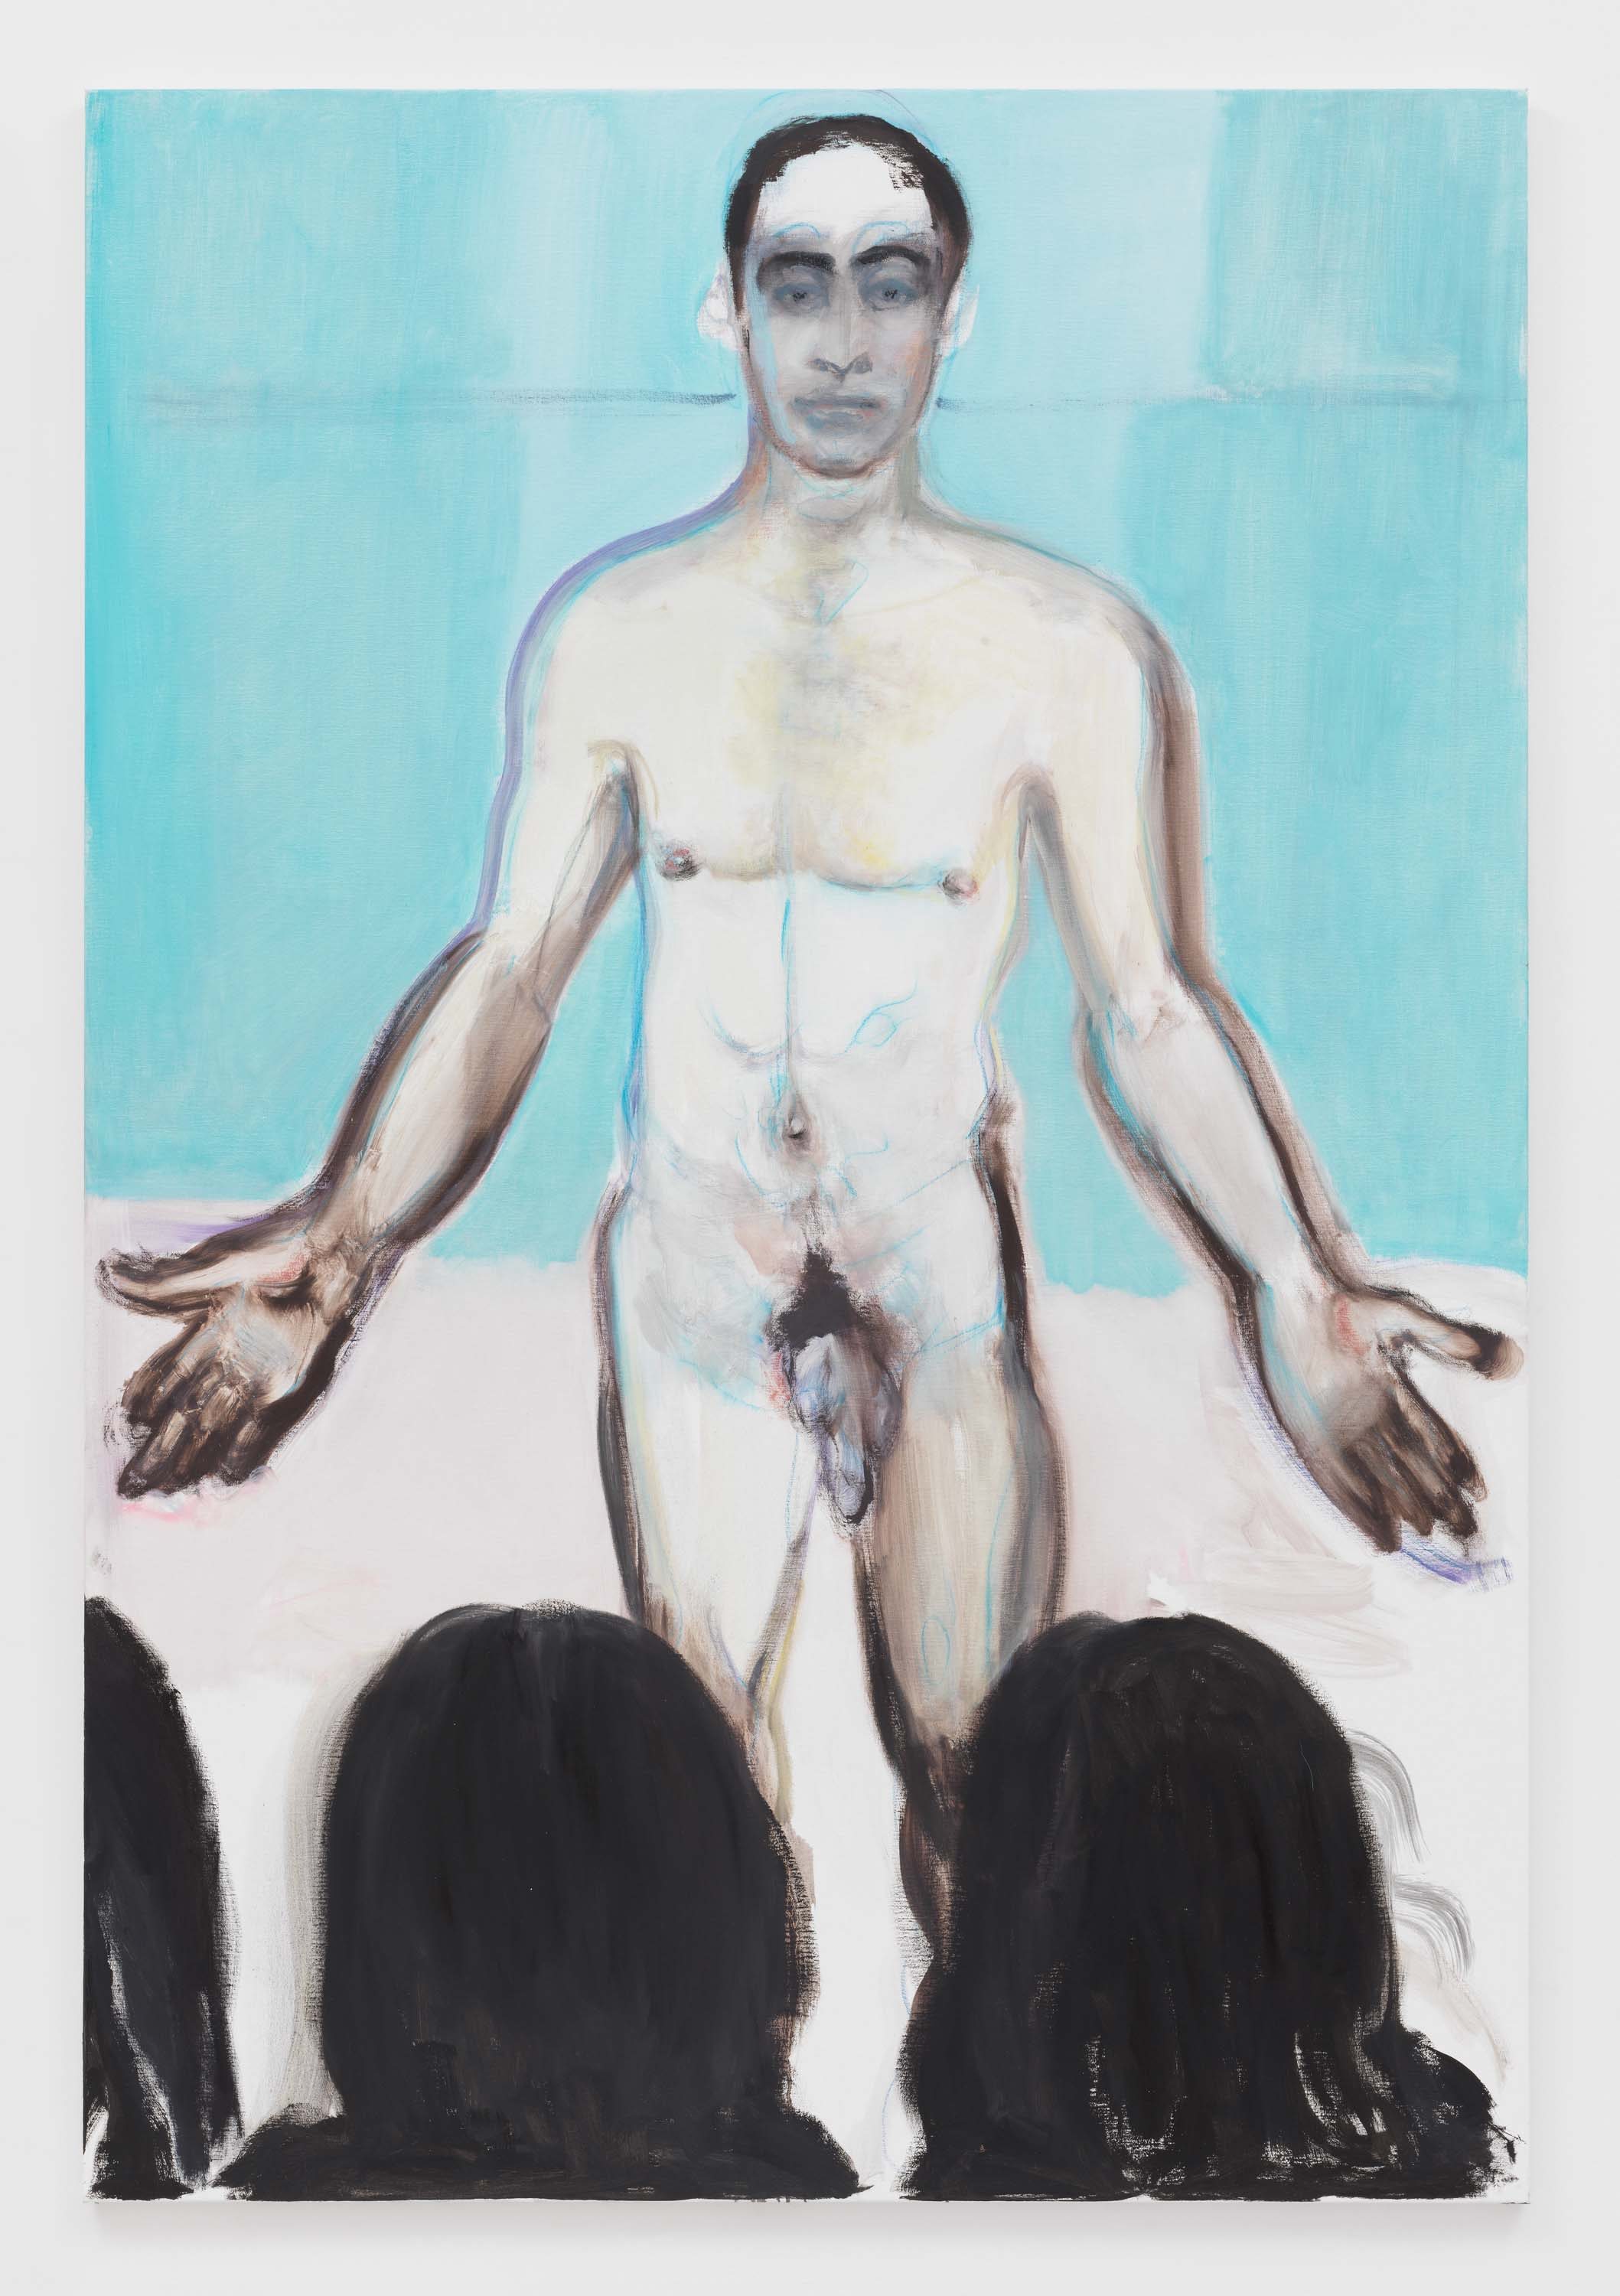 Passions, mythe et chasse à l’homme... Les toiles éprouvantes de Marlene Dumas à la galerie David Zwirner